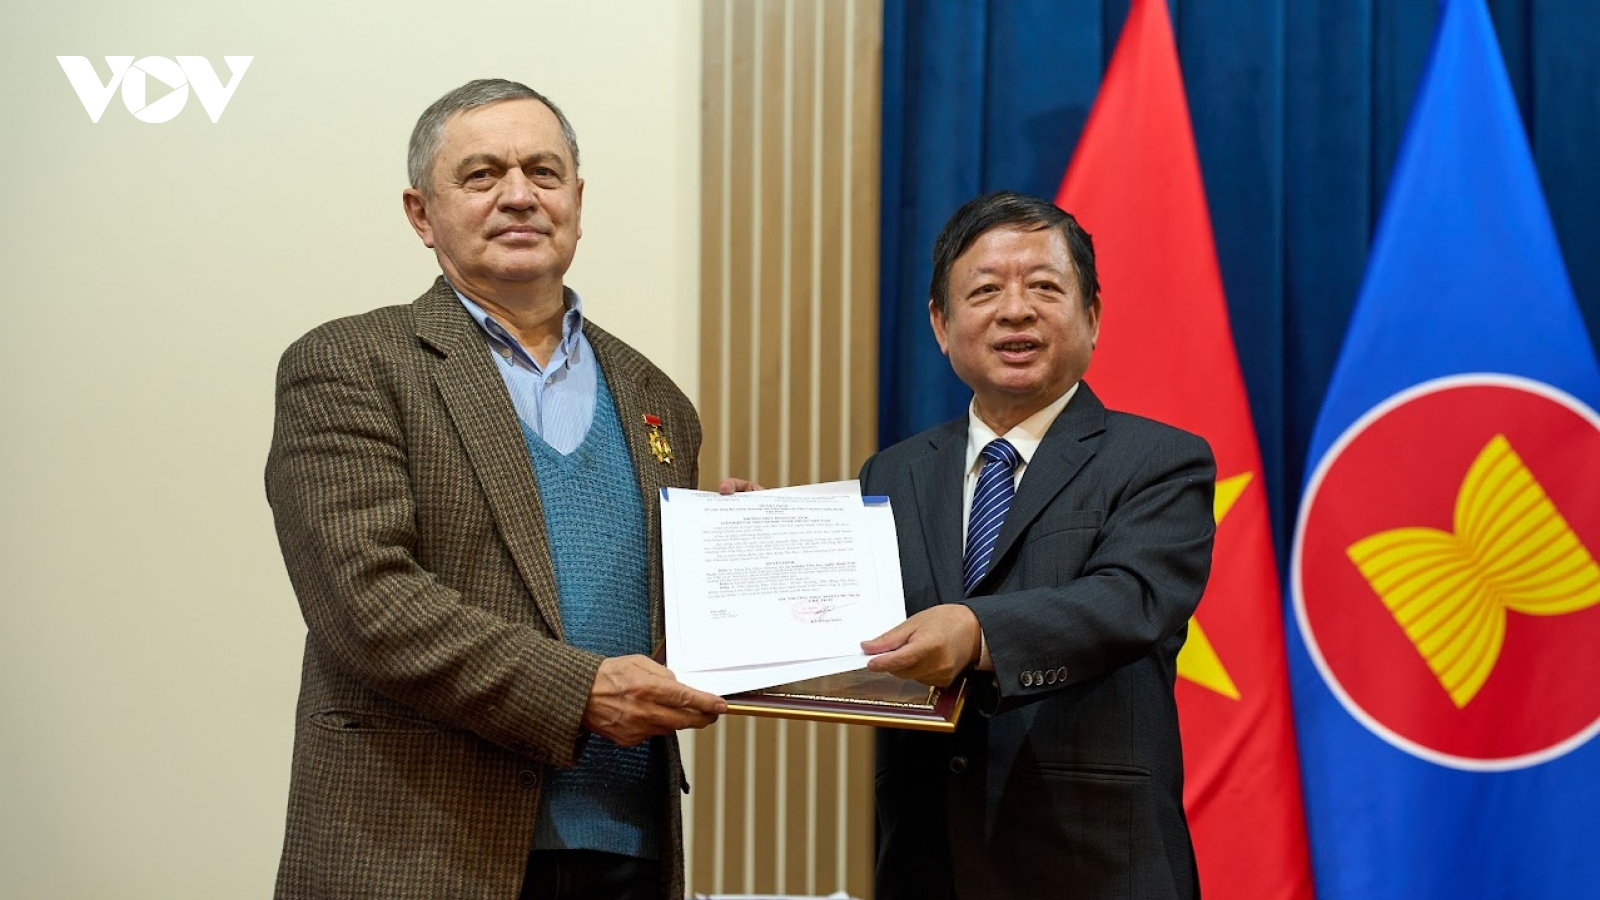 Trao tặng Kỷ niệm chương "Vì sự nghiệp VHNT Việt Nam" cho dịch giả người Nga